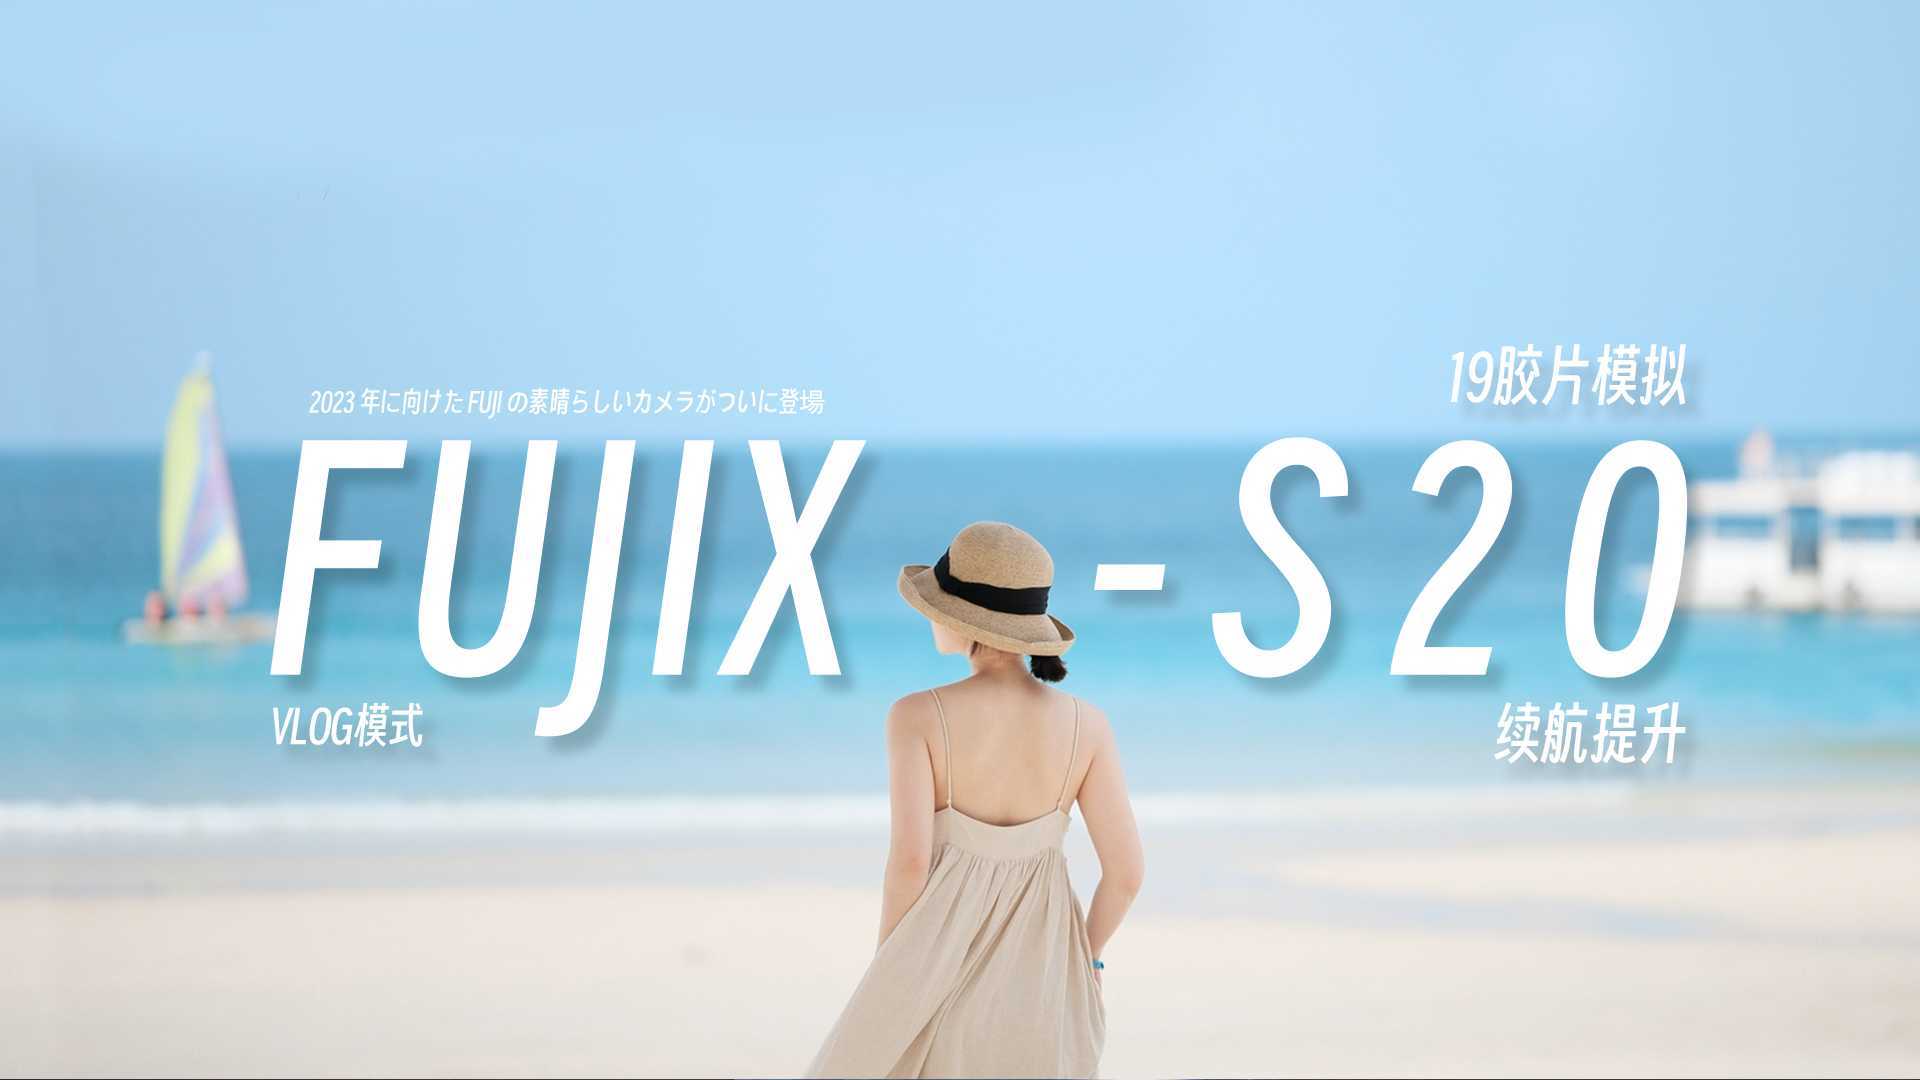 【4k富士X-S20首发】春之歌-海之恋-不同环境拍摄全记录